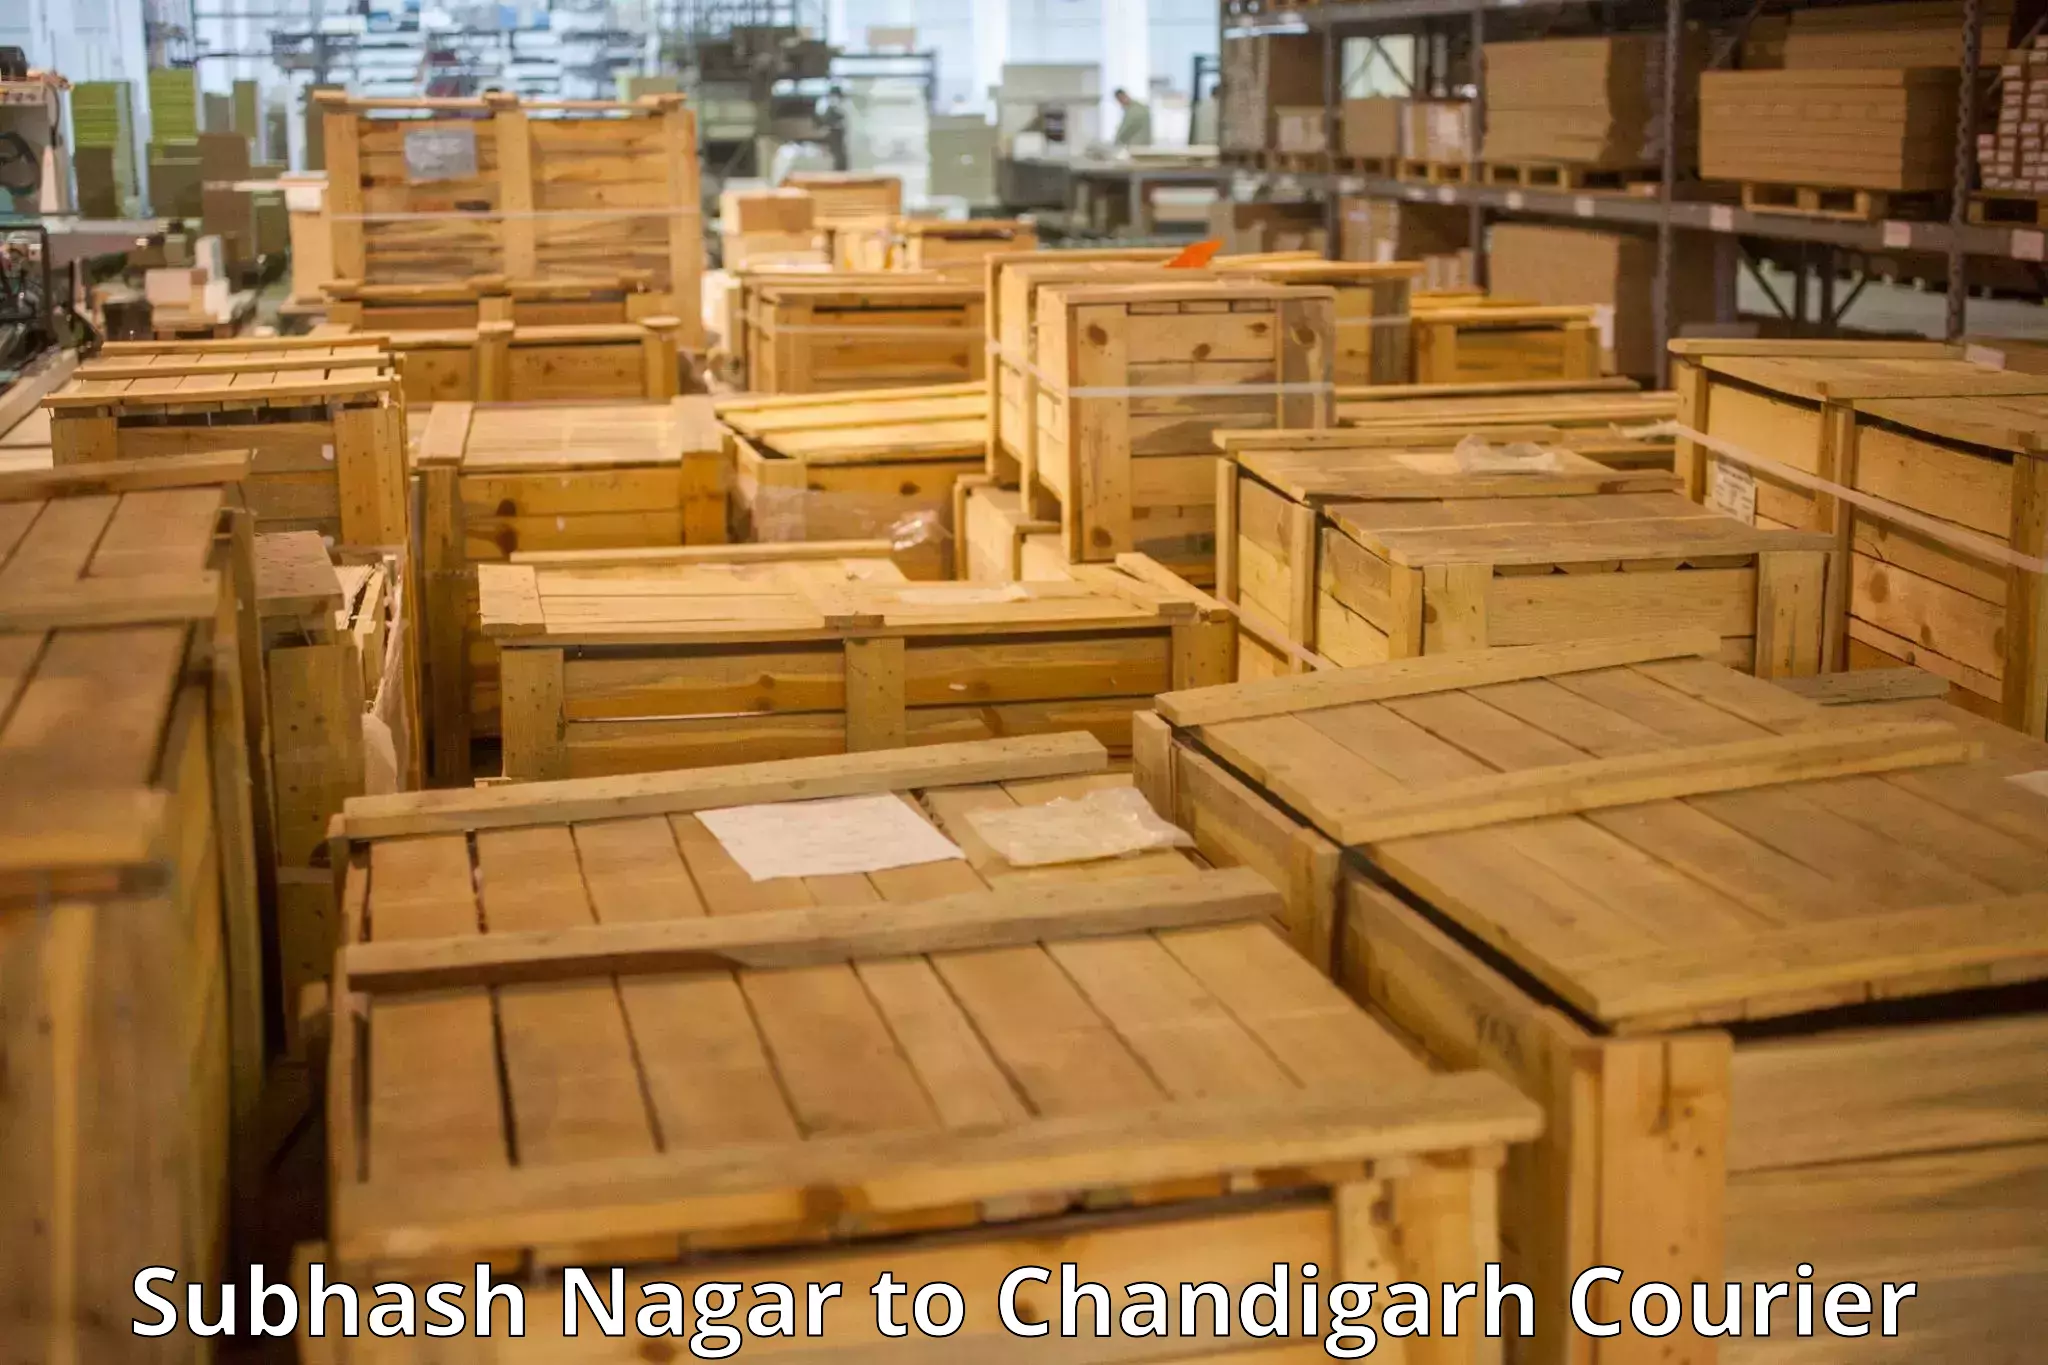 Baggage transport network Subhash Nagar to Chandigarh